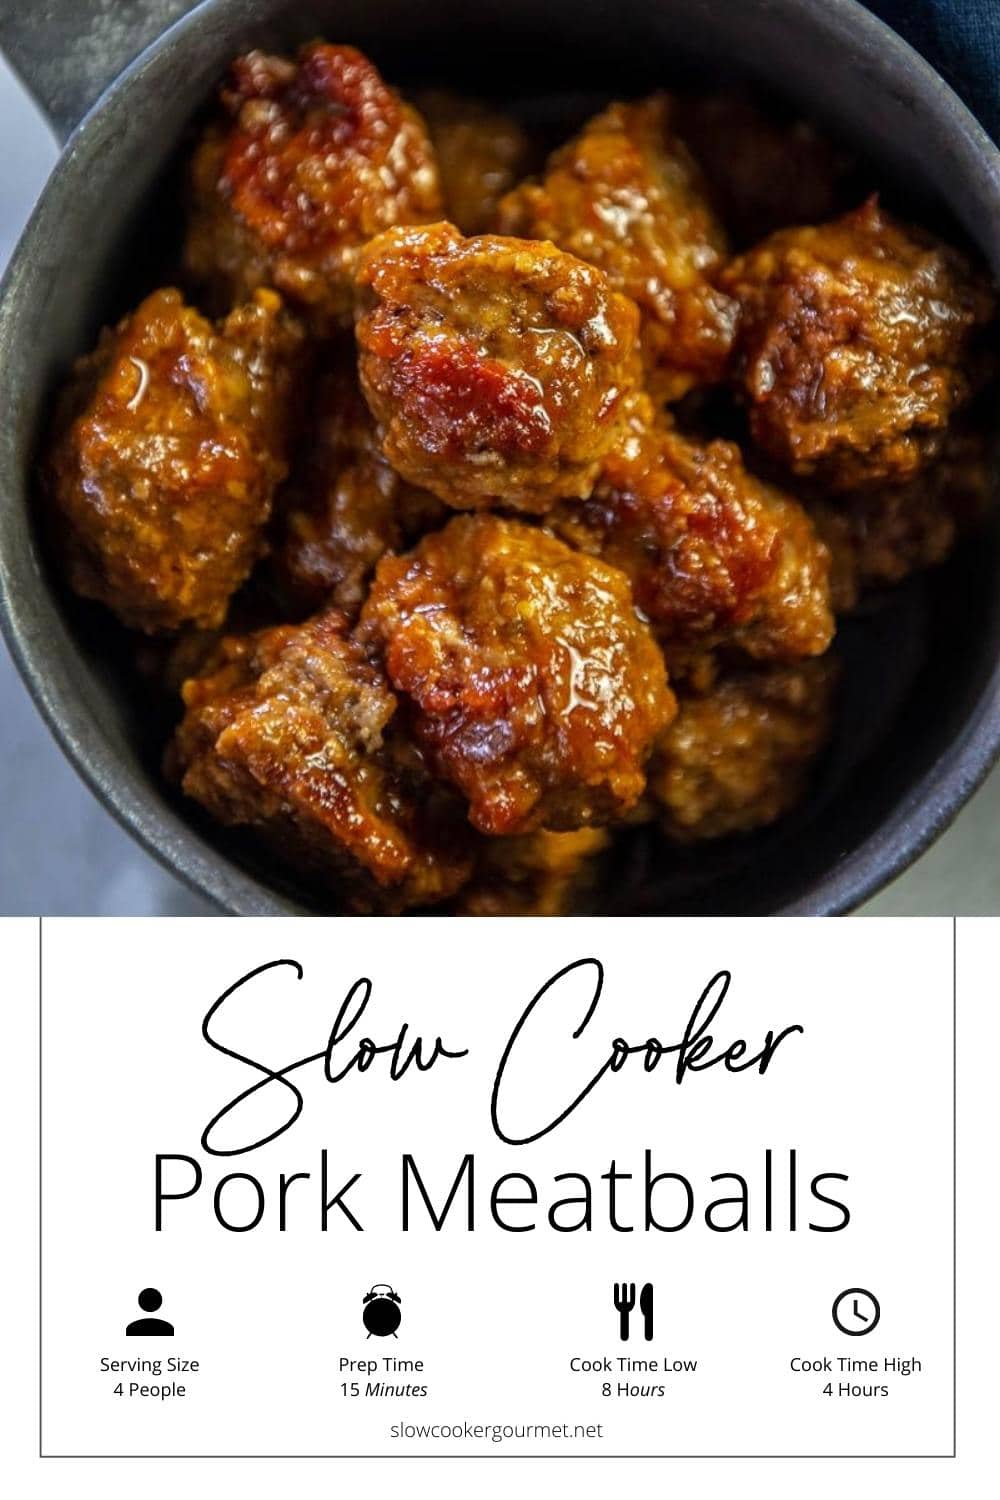 SCG SC Pork Meatballs Pin 4 